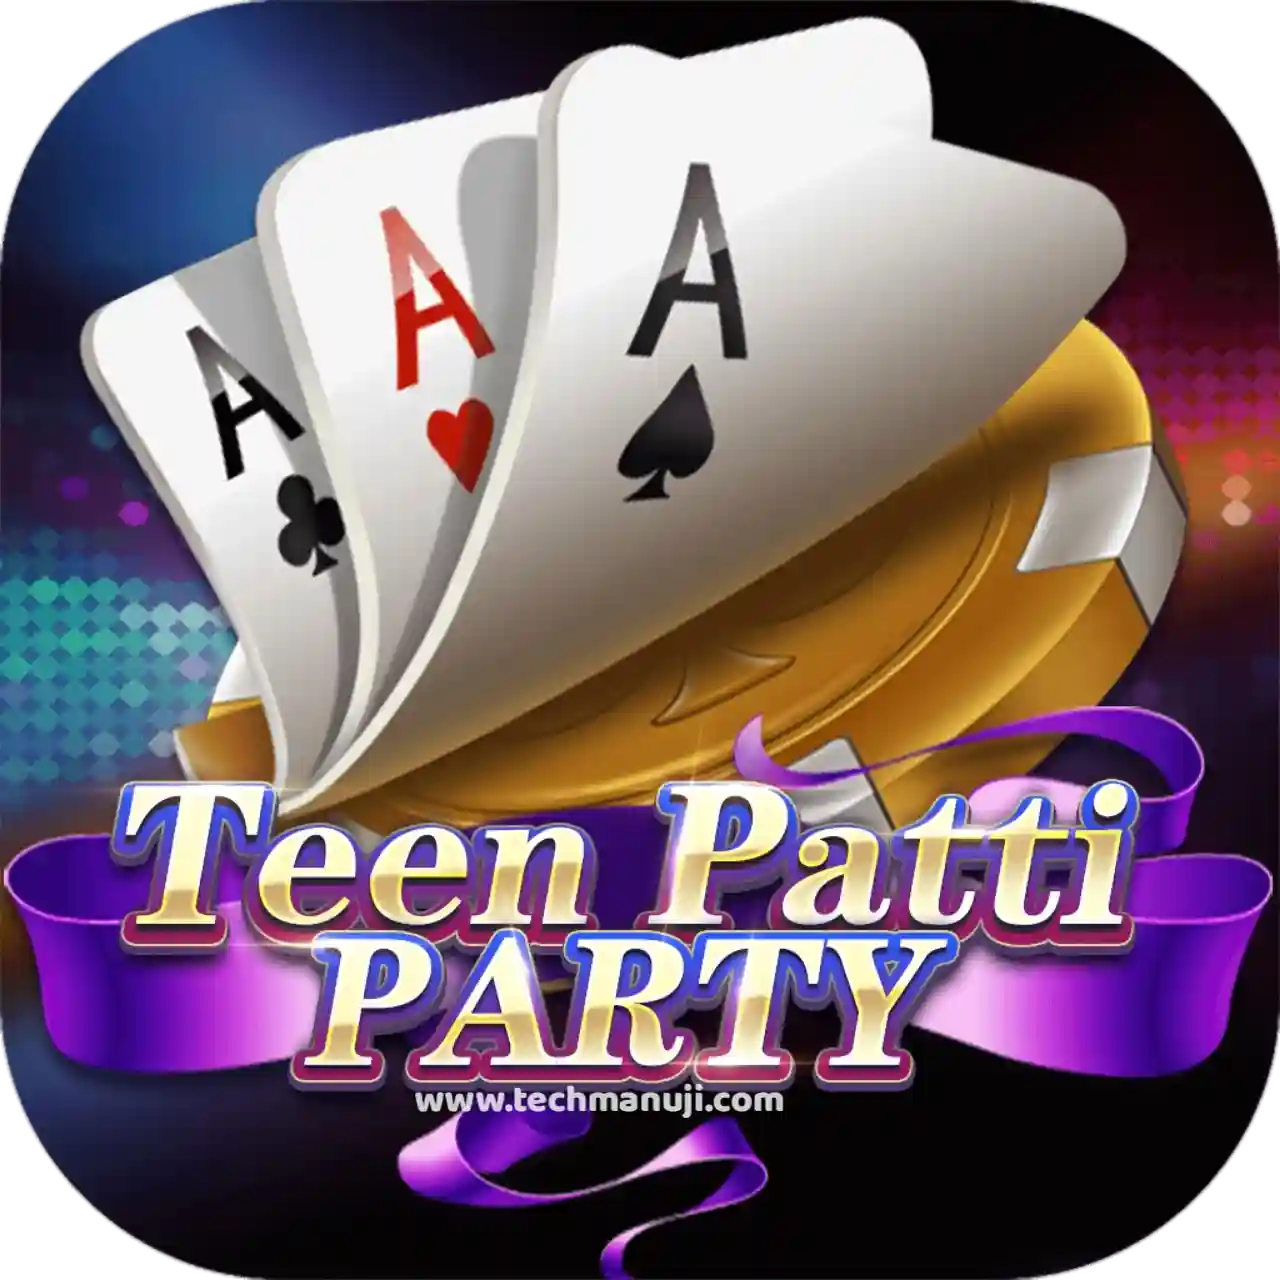 Teen Patti Party App Download All Teen Patti App List ₹41 Bonus